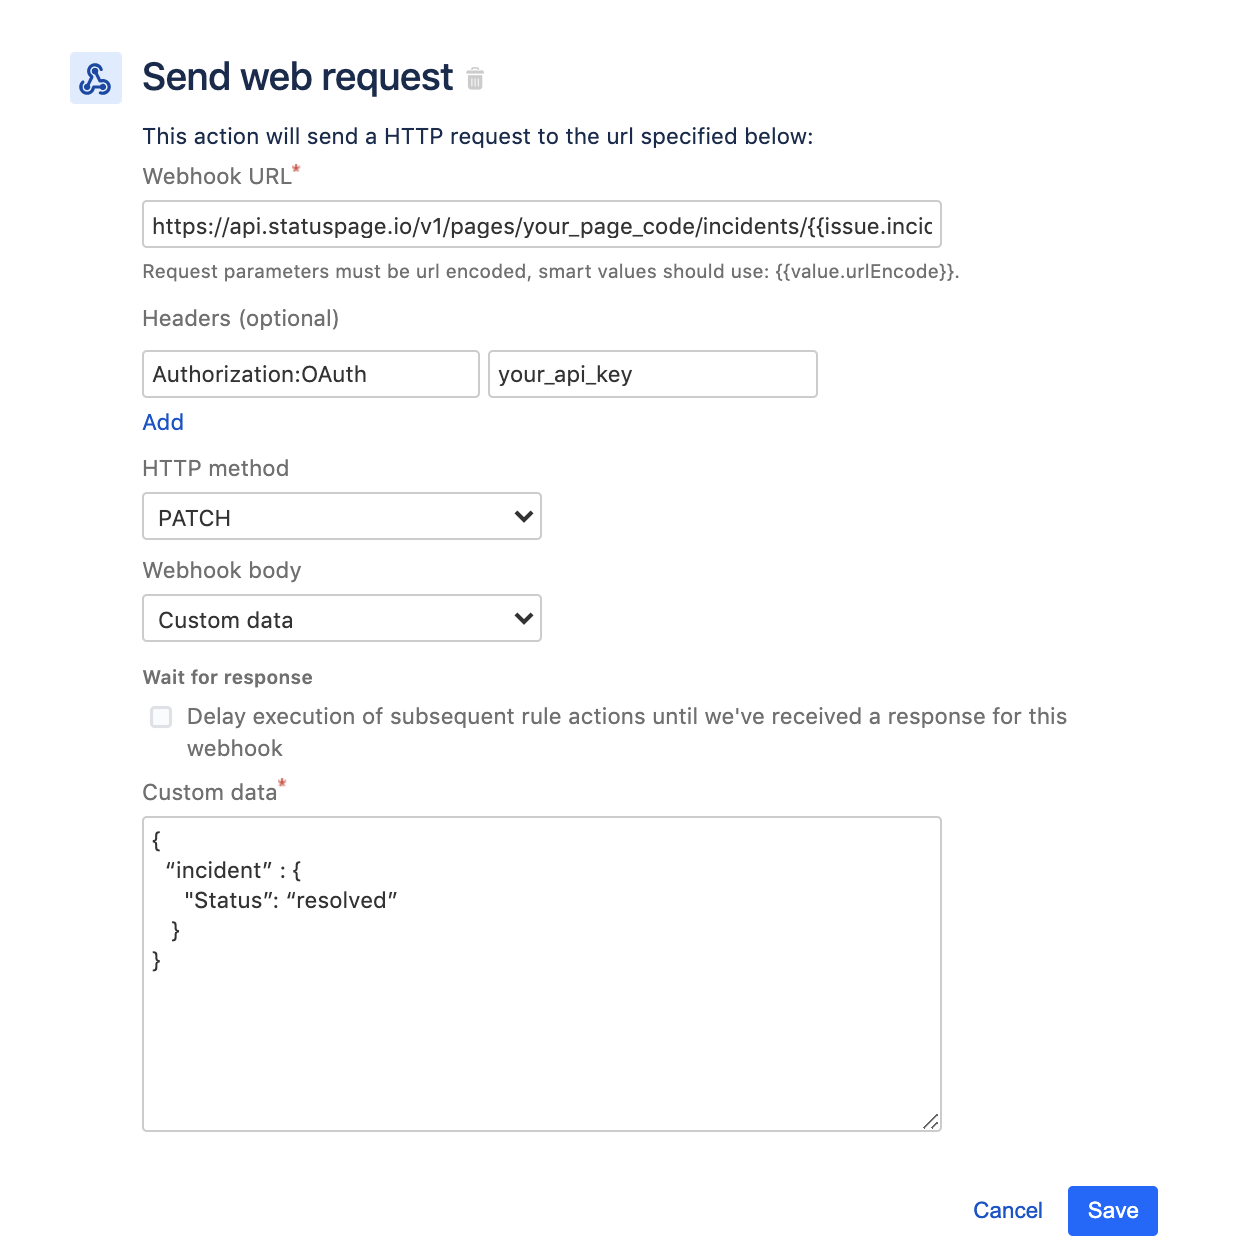 Send web request